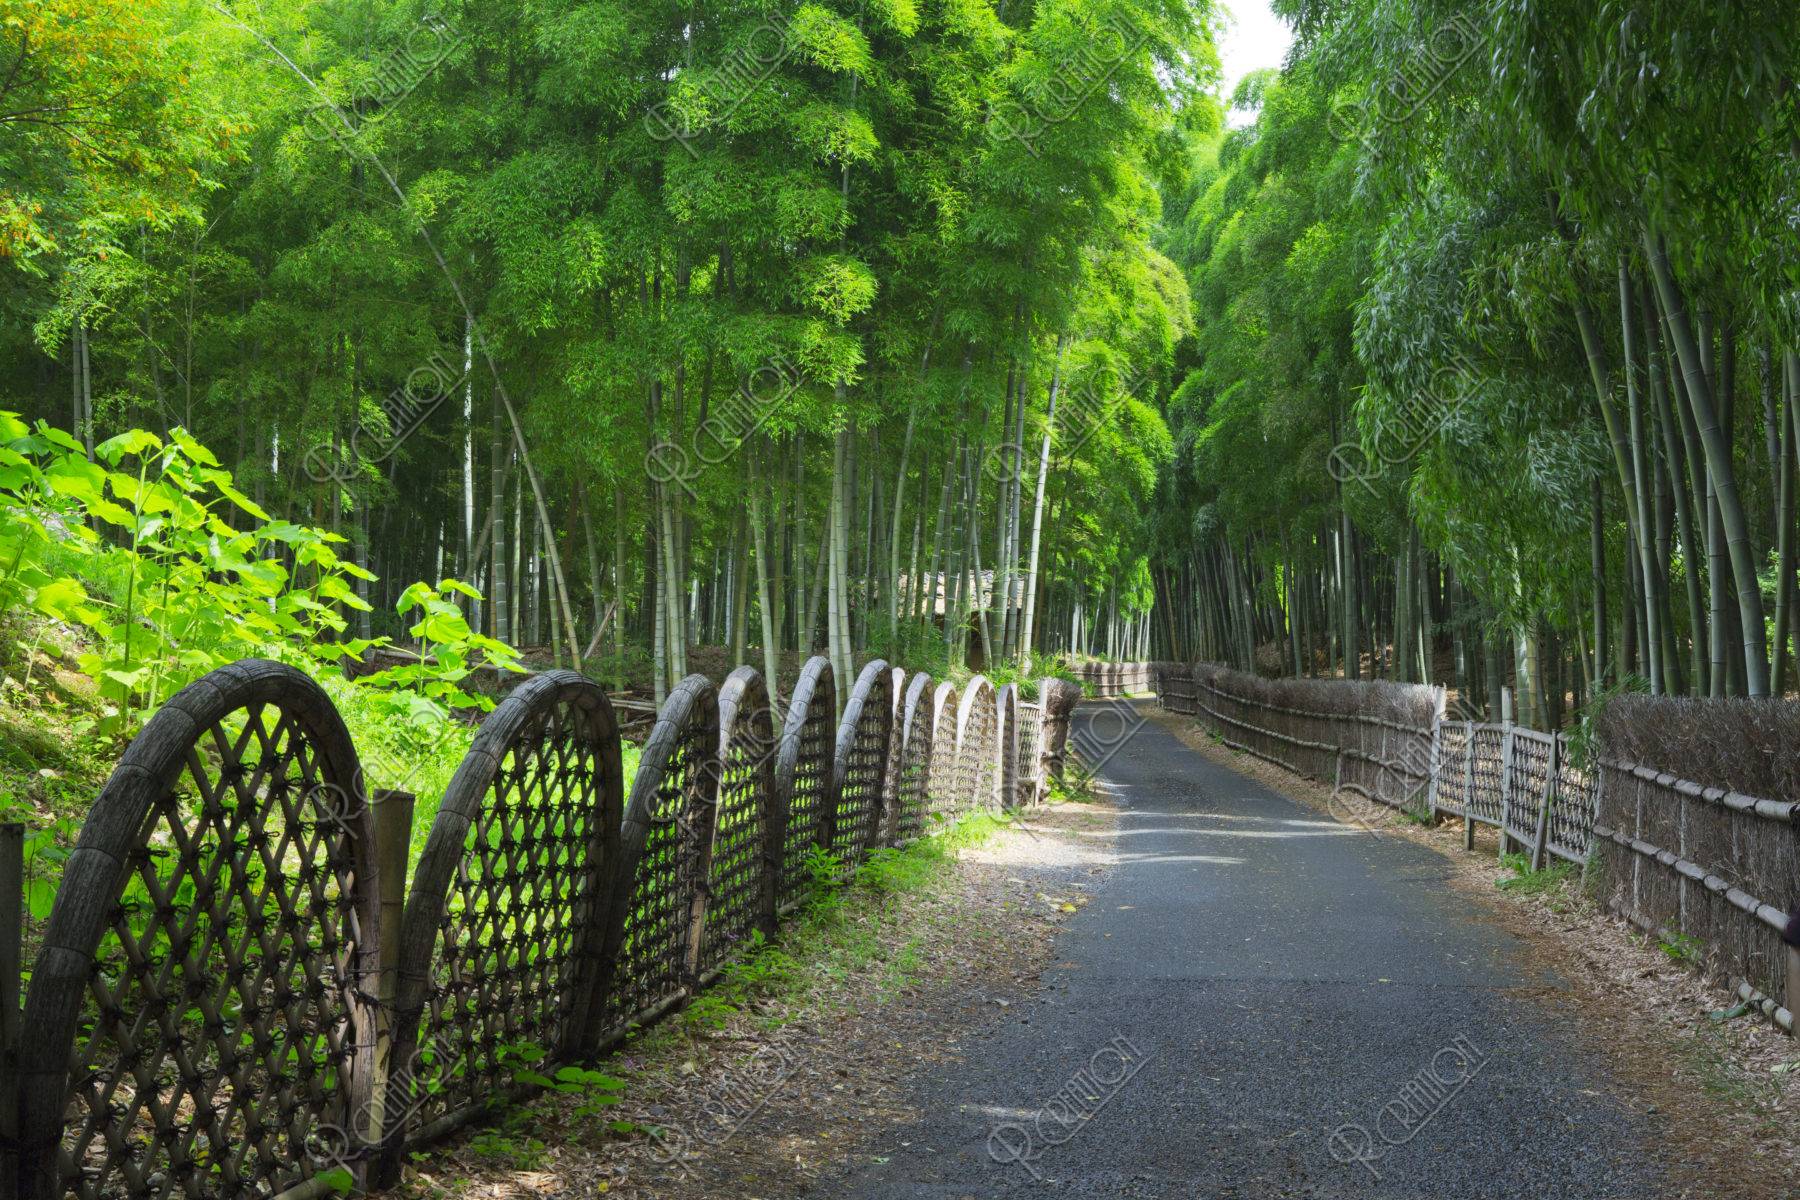 涼を感じられる名所「竹林の道」 | caedeKyoto[カエデ京都] 紅葉と伝統美を引き継ぐバッグ